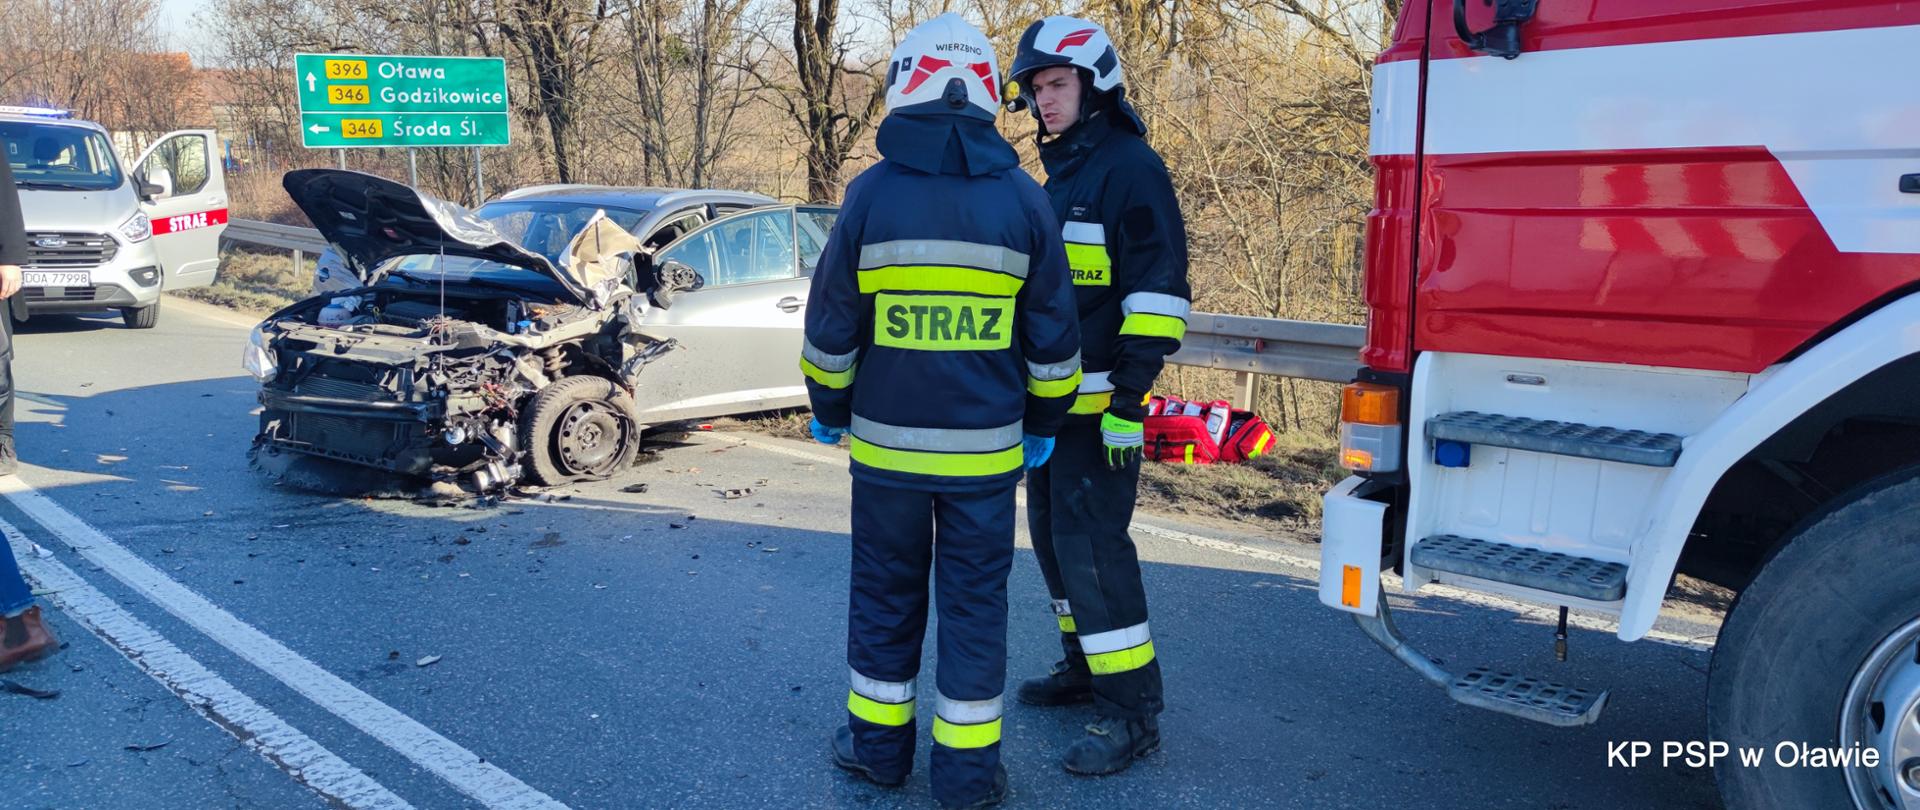 na zdjęciu widać rozbity samochód osobowy uczestniczący w wypadku. Po prawej dwaj strażacy rozmawiają ze sobą.